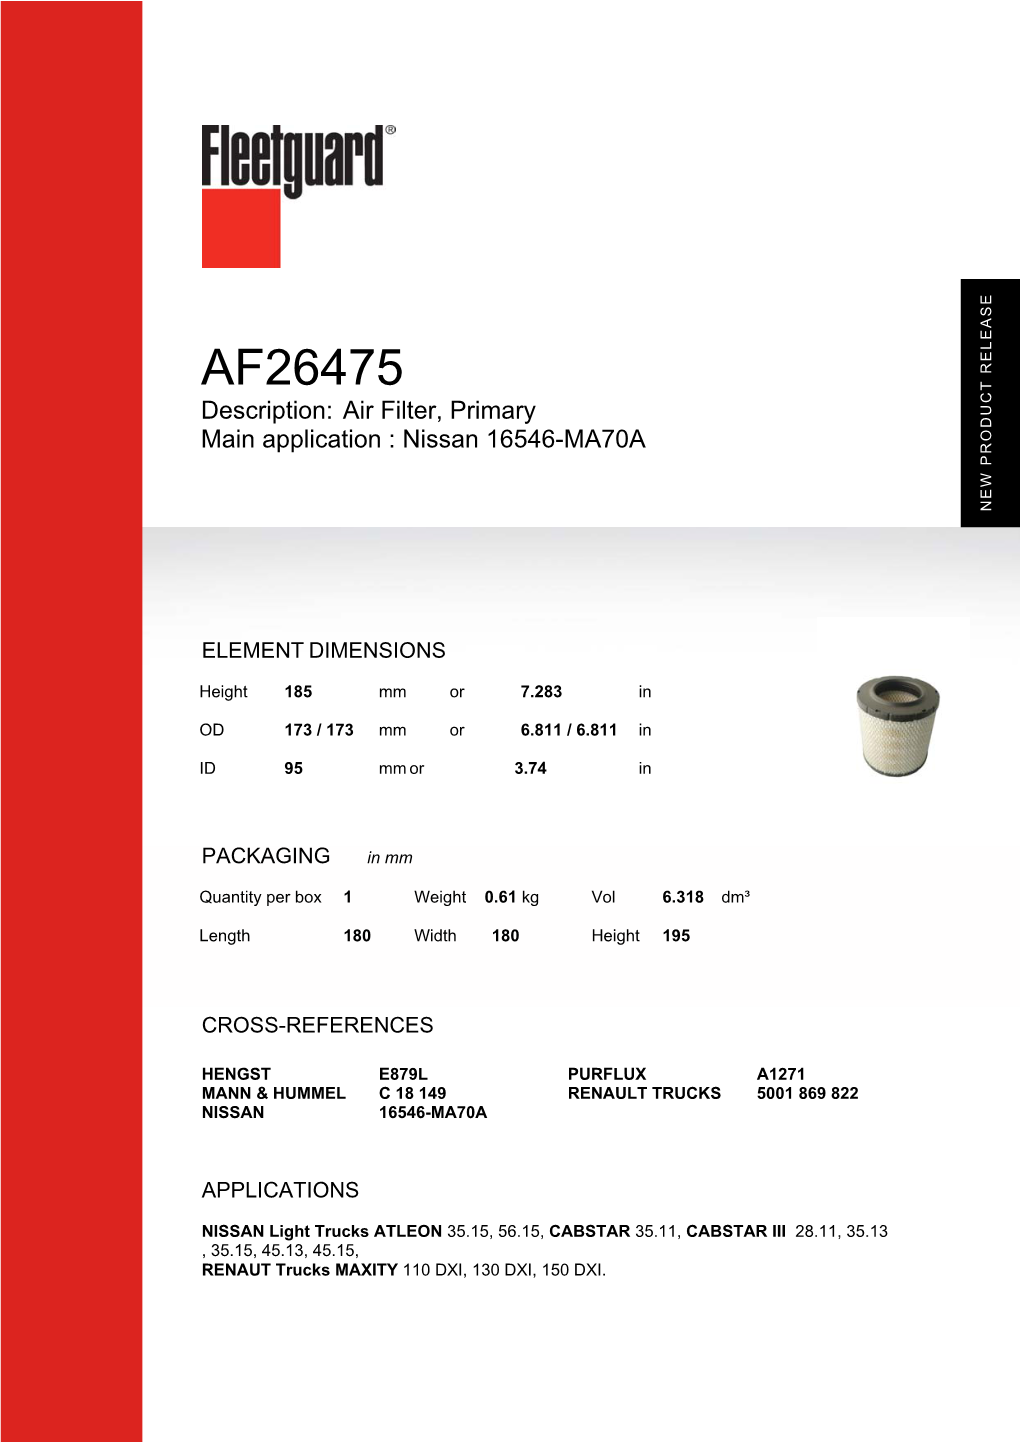 AF26475 Description: Air Filter, Primary